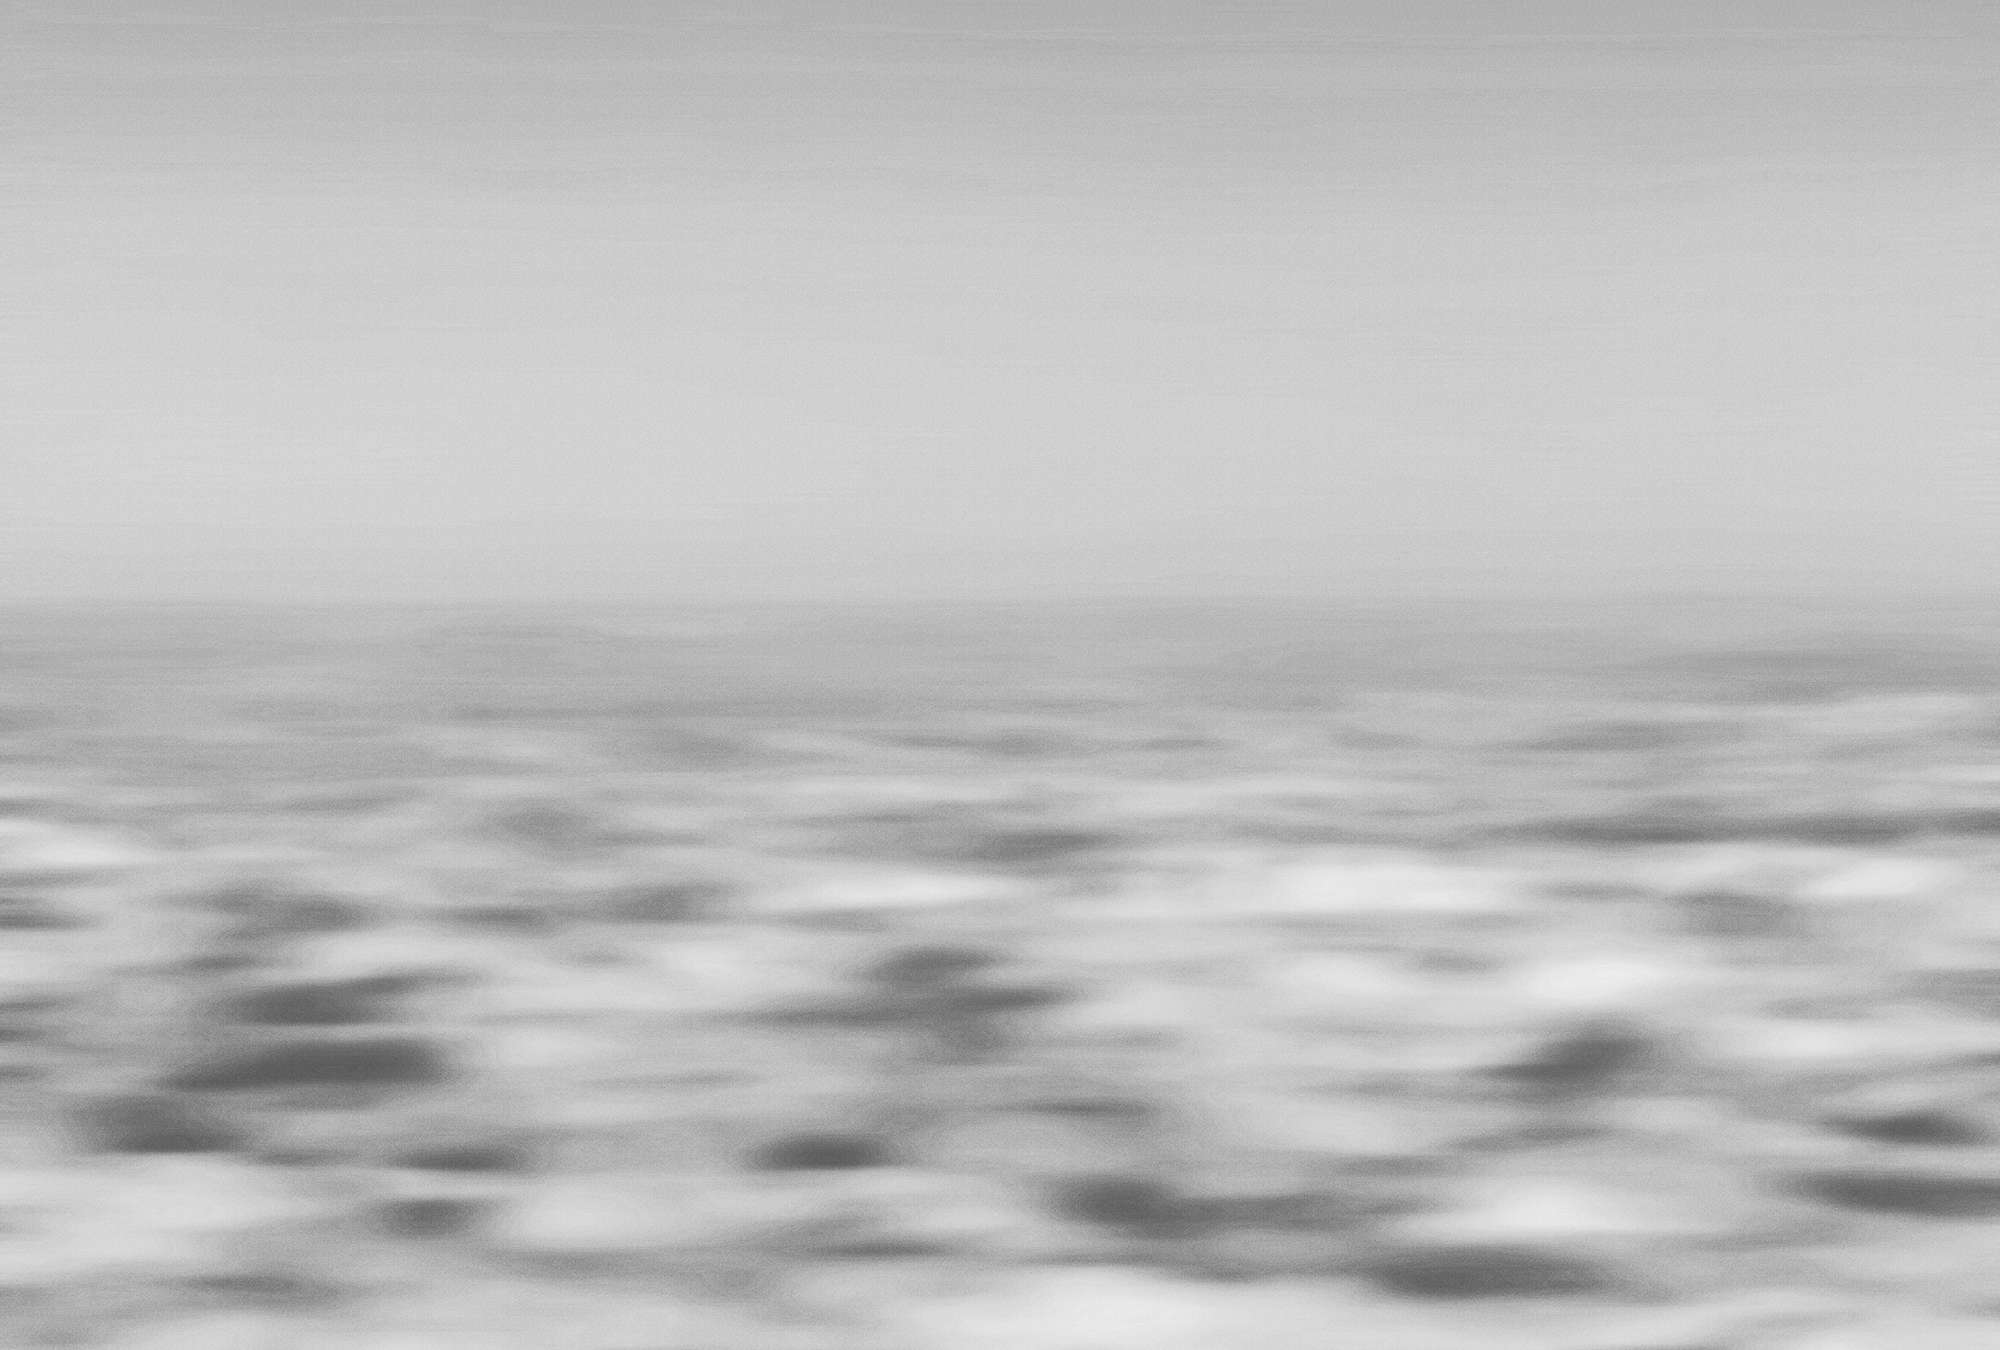             Fotomurali marittimo e astratto, mare e onde - grigio, bianco
        